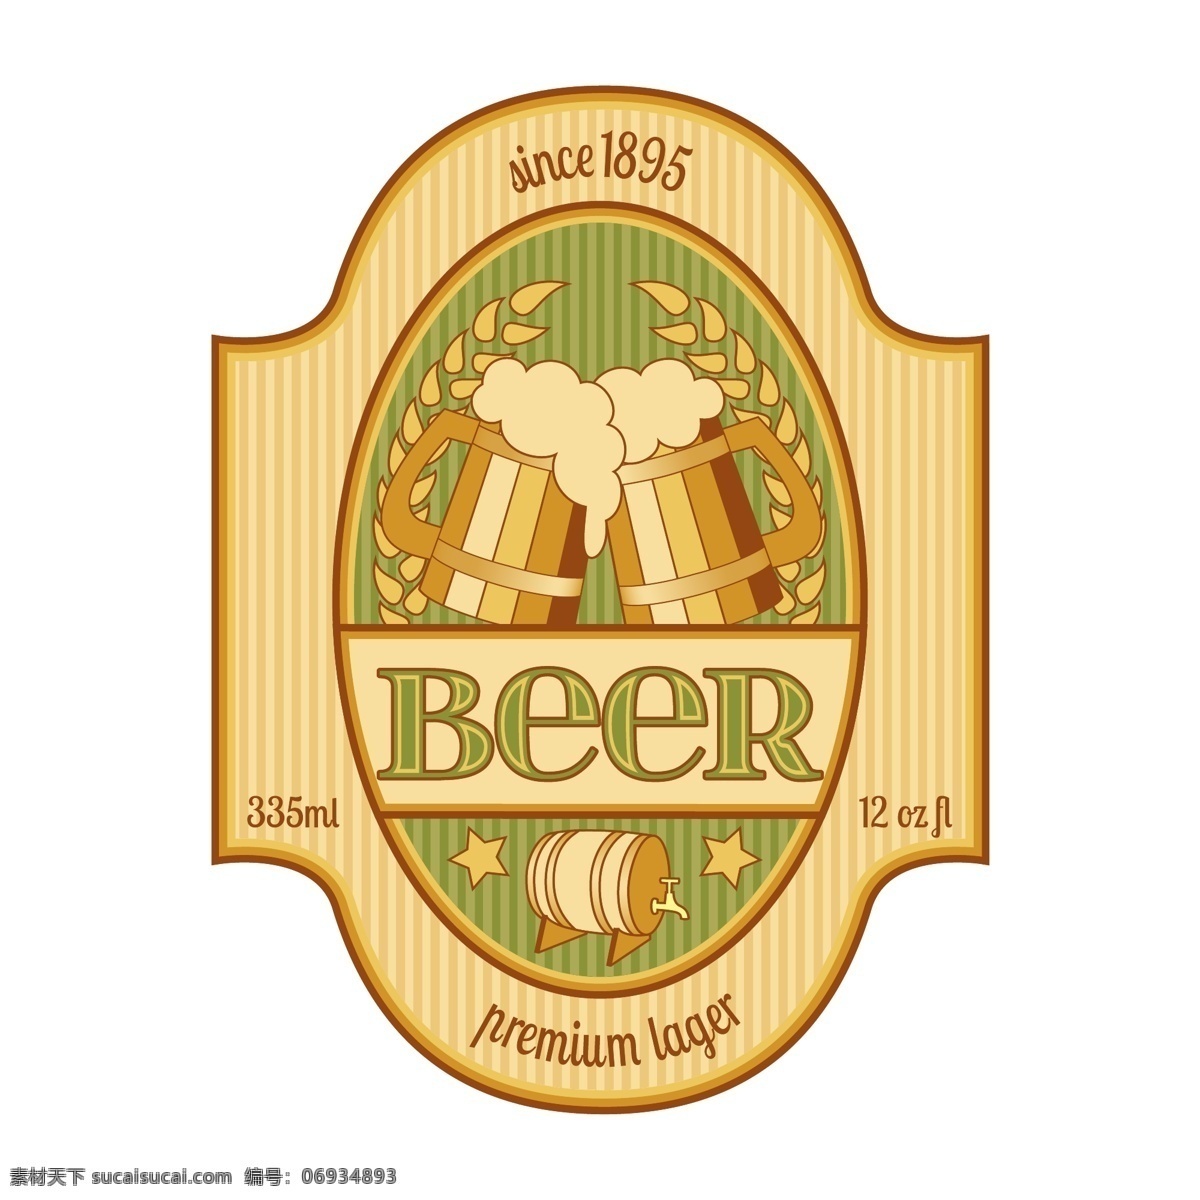 啤酒 商标 标签 啤酒商标 啤酒标签 啤酒标志 啤酒设计 酒水 beer 啤酒包装 小图标 小标志 图标 logo 标志 vi icon 标识 图标设计 logo设计 标志设计 标识设计 矢量设计 餐饮美食 生活百科 矢量